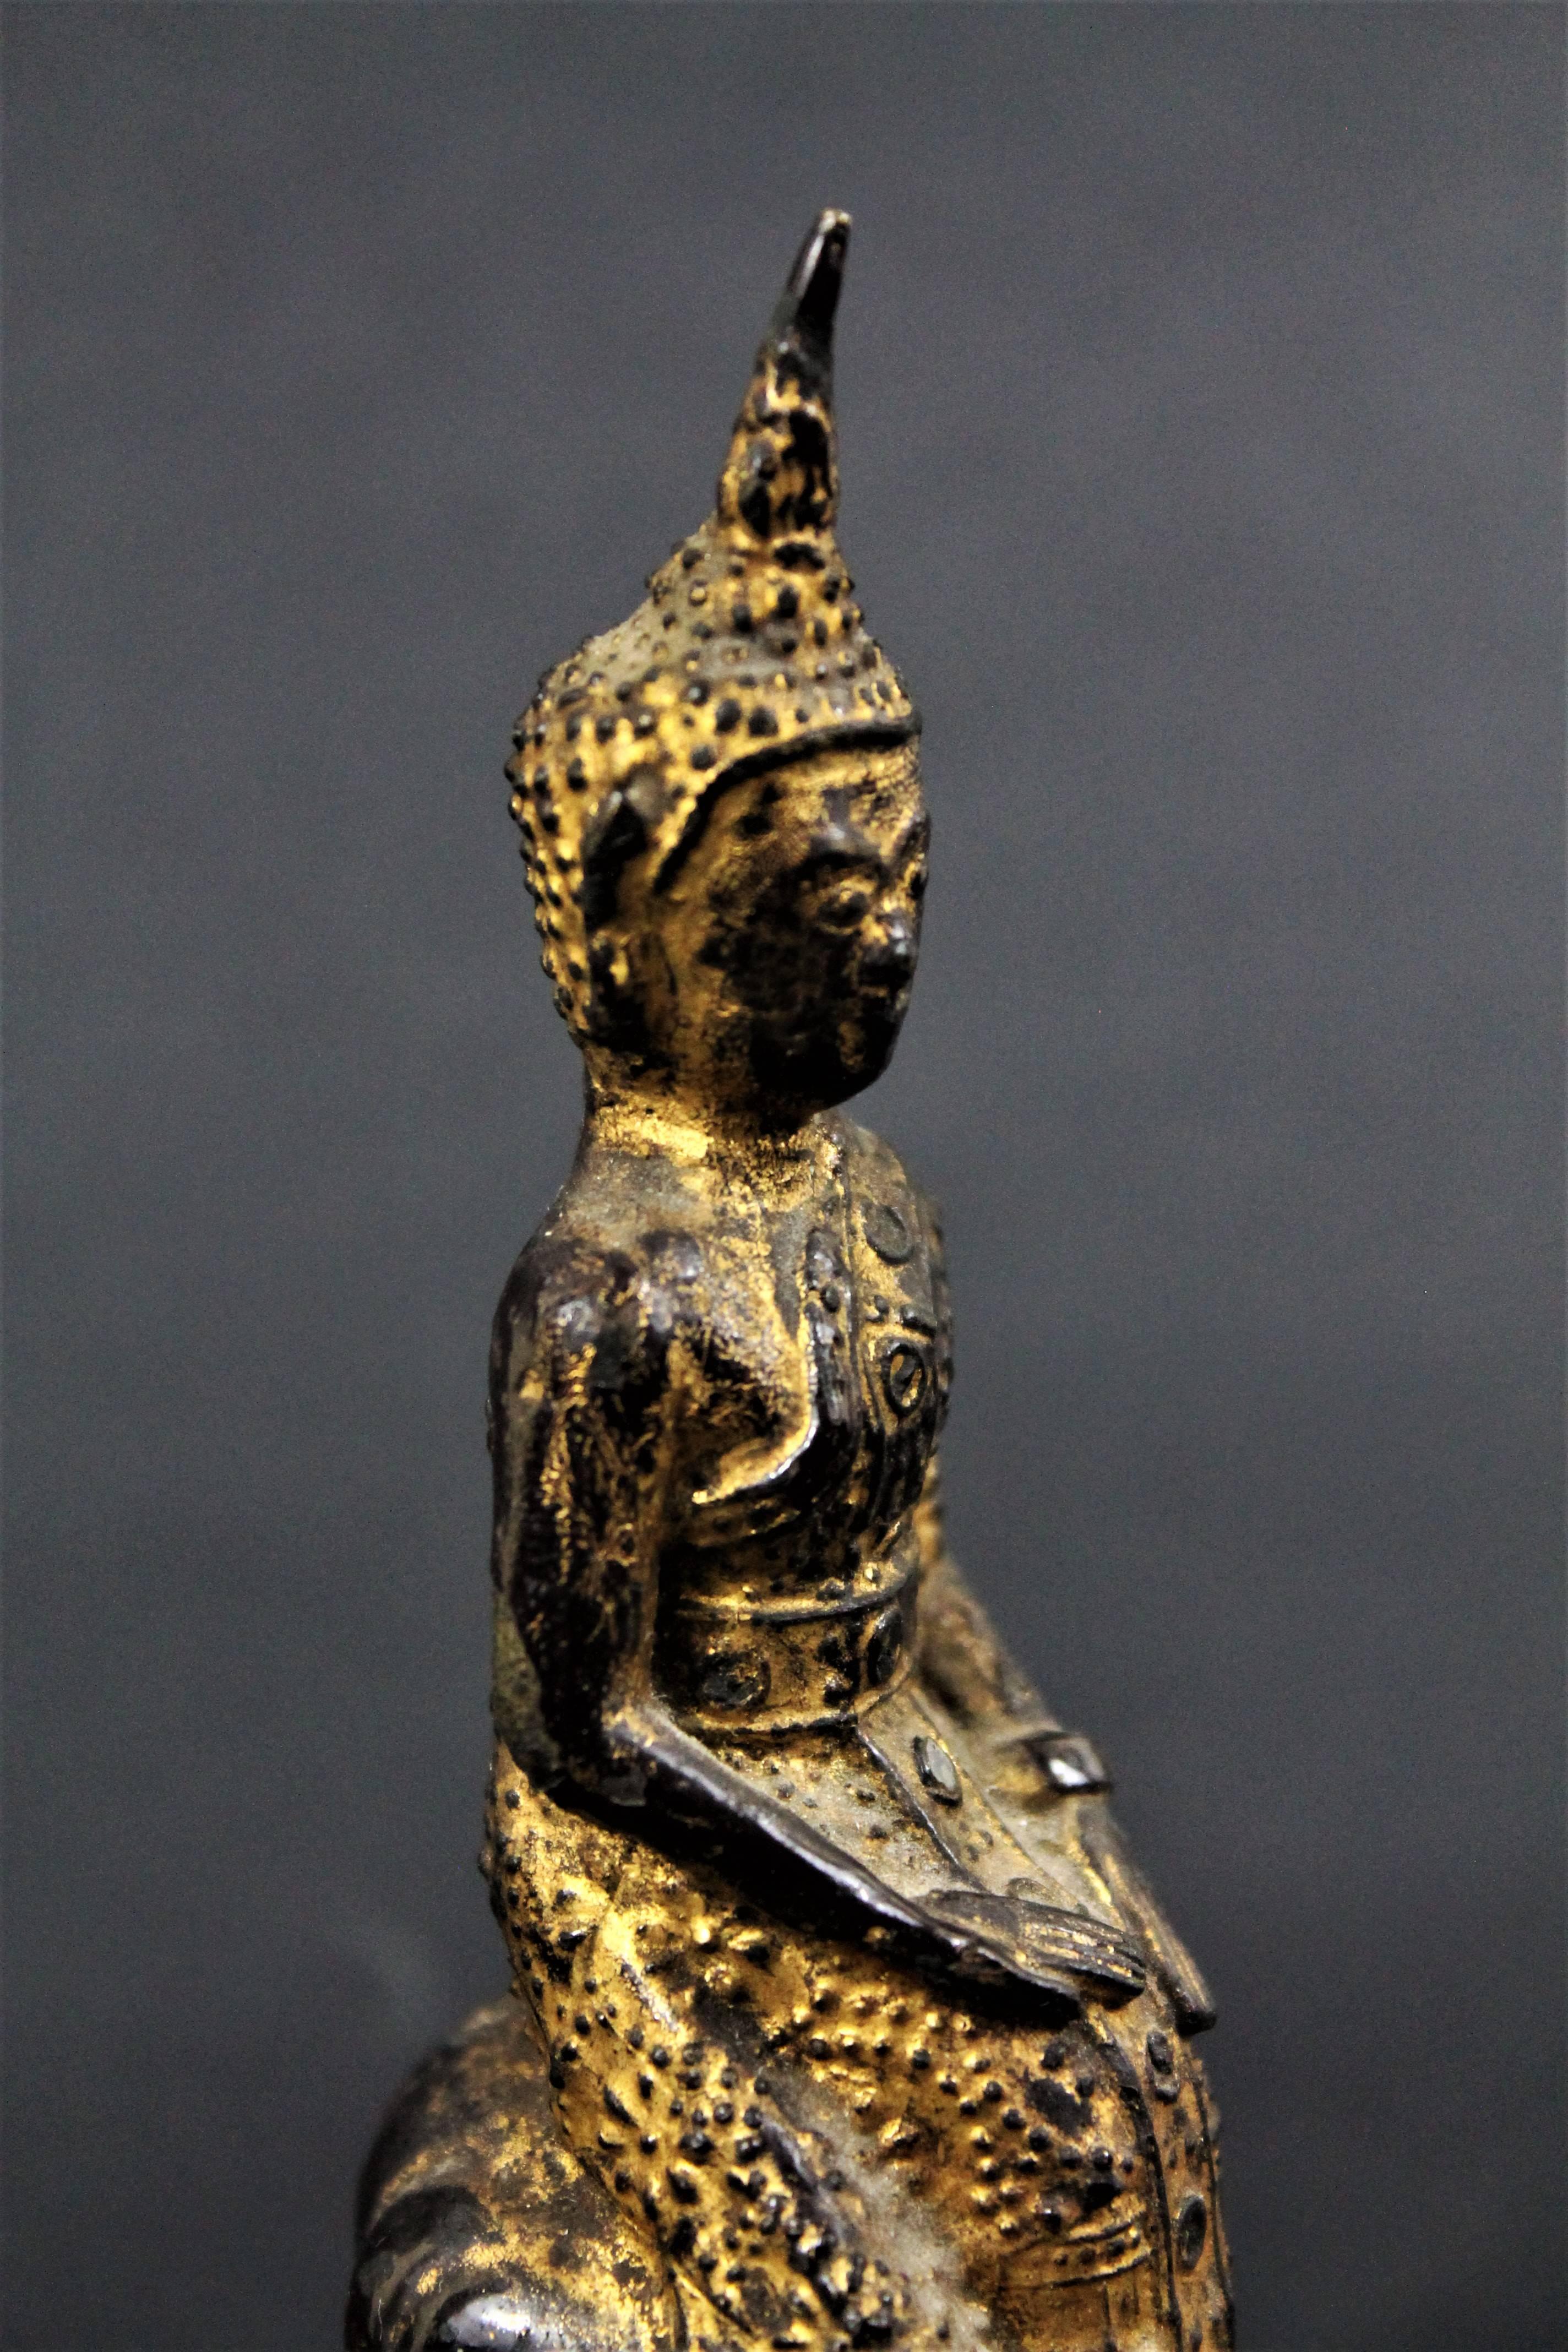 Seltene Darstellung des Buddhas der Mittwochnacht zwischen Mitternacht und Morgengrauen:
Er sitzt, die rechte Hand mit der geöffneten Handfläche auf seinem rechten Knie als Zeichen der Annahme des vom Elefantenkönig angebotenen Wassers. Der Buddha